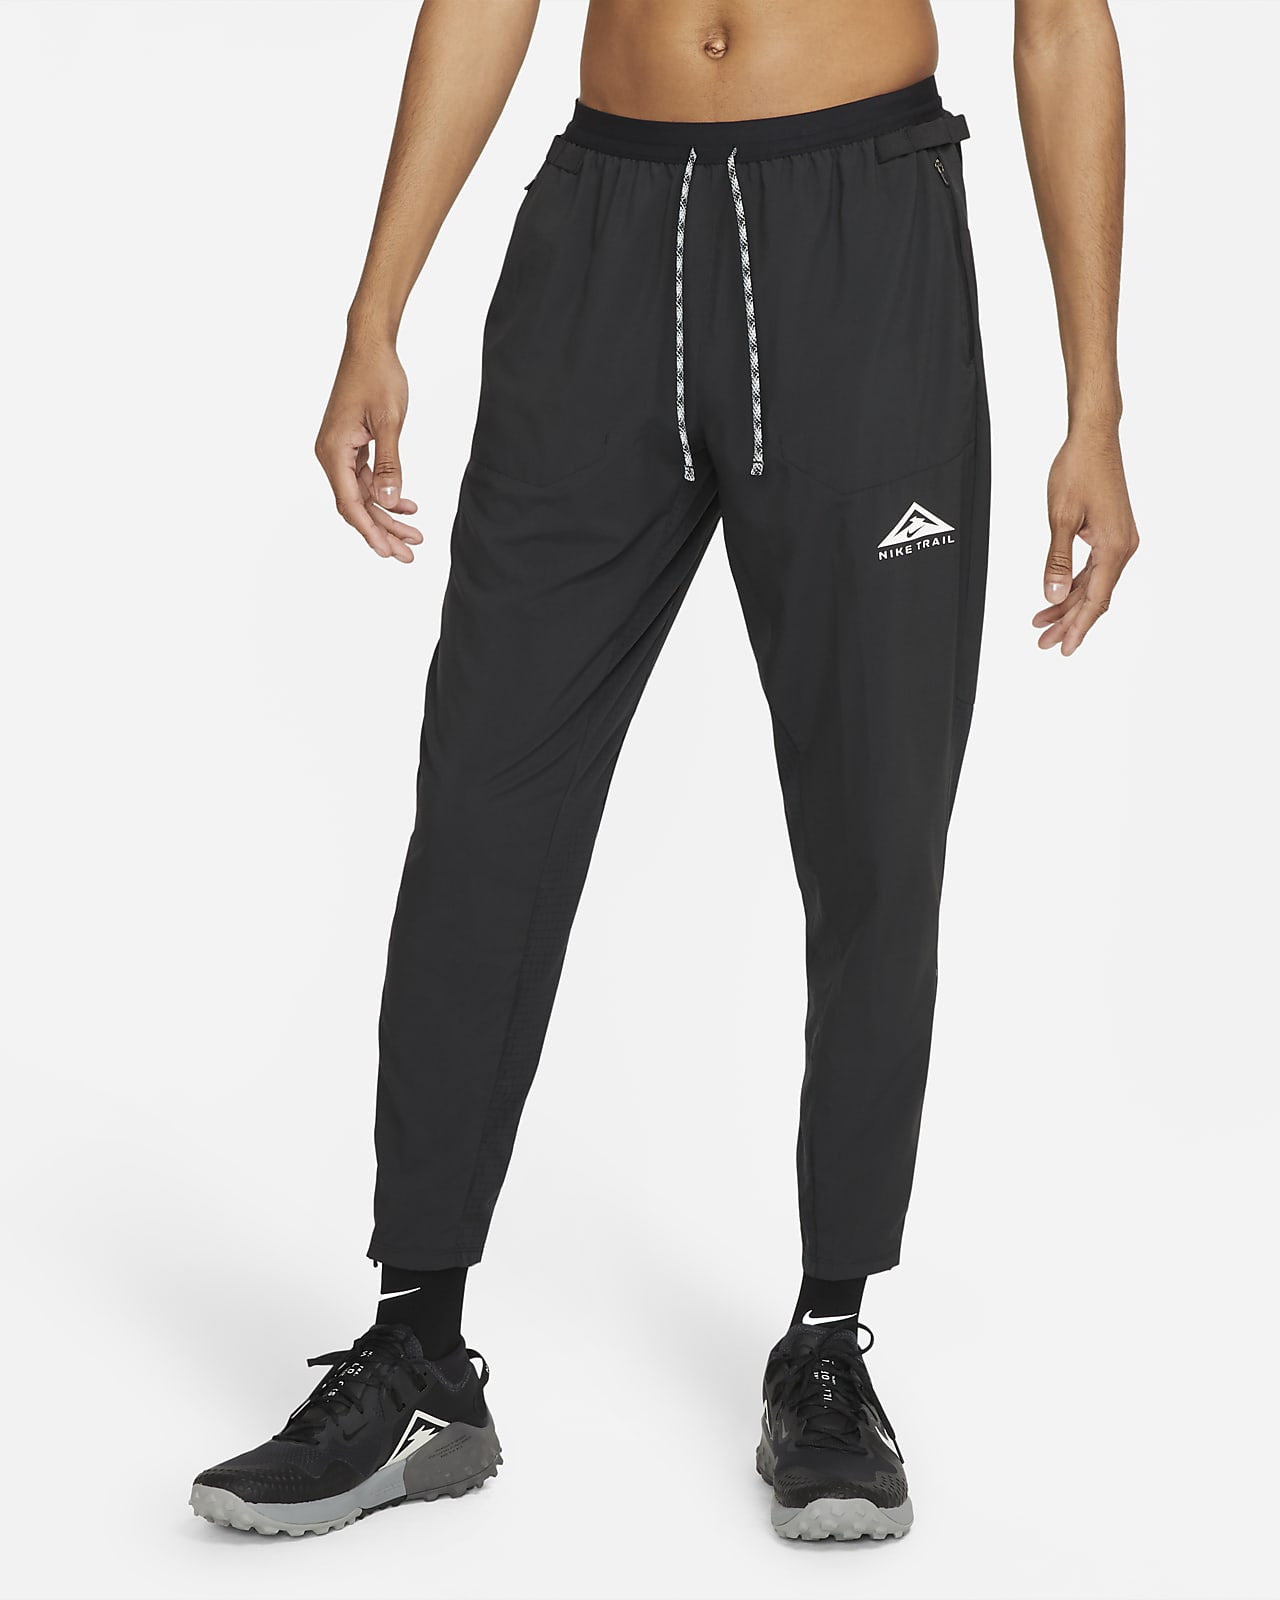 Pantaloni da trail running in tessuto Nike Phenom Elite - Uomo